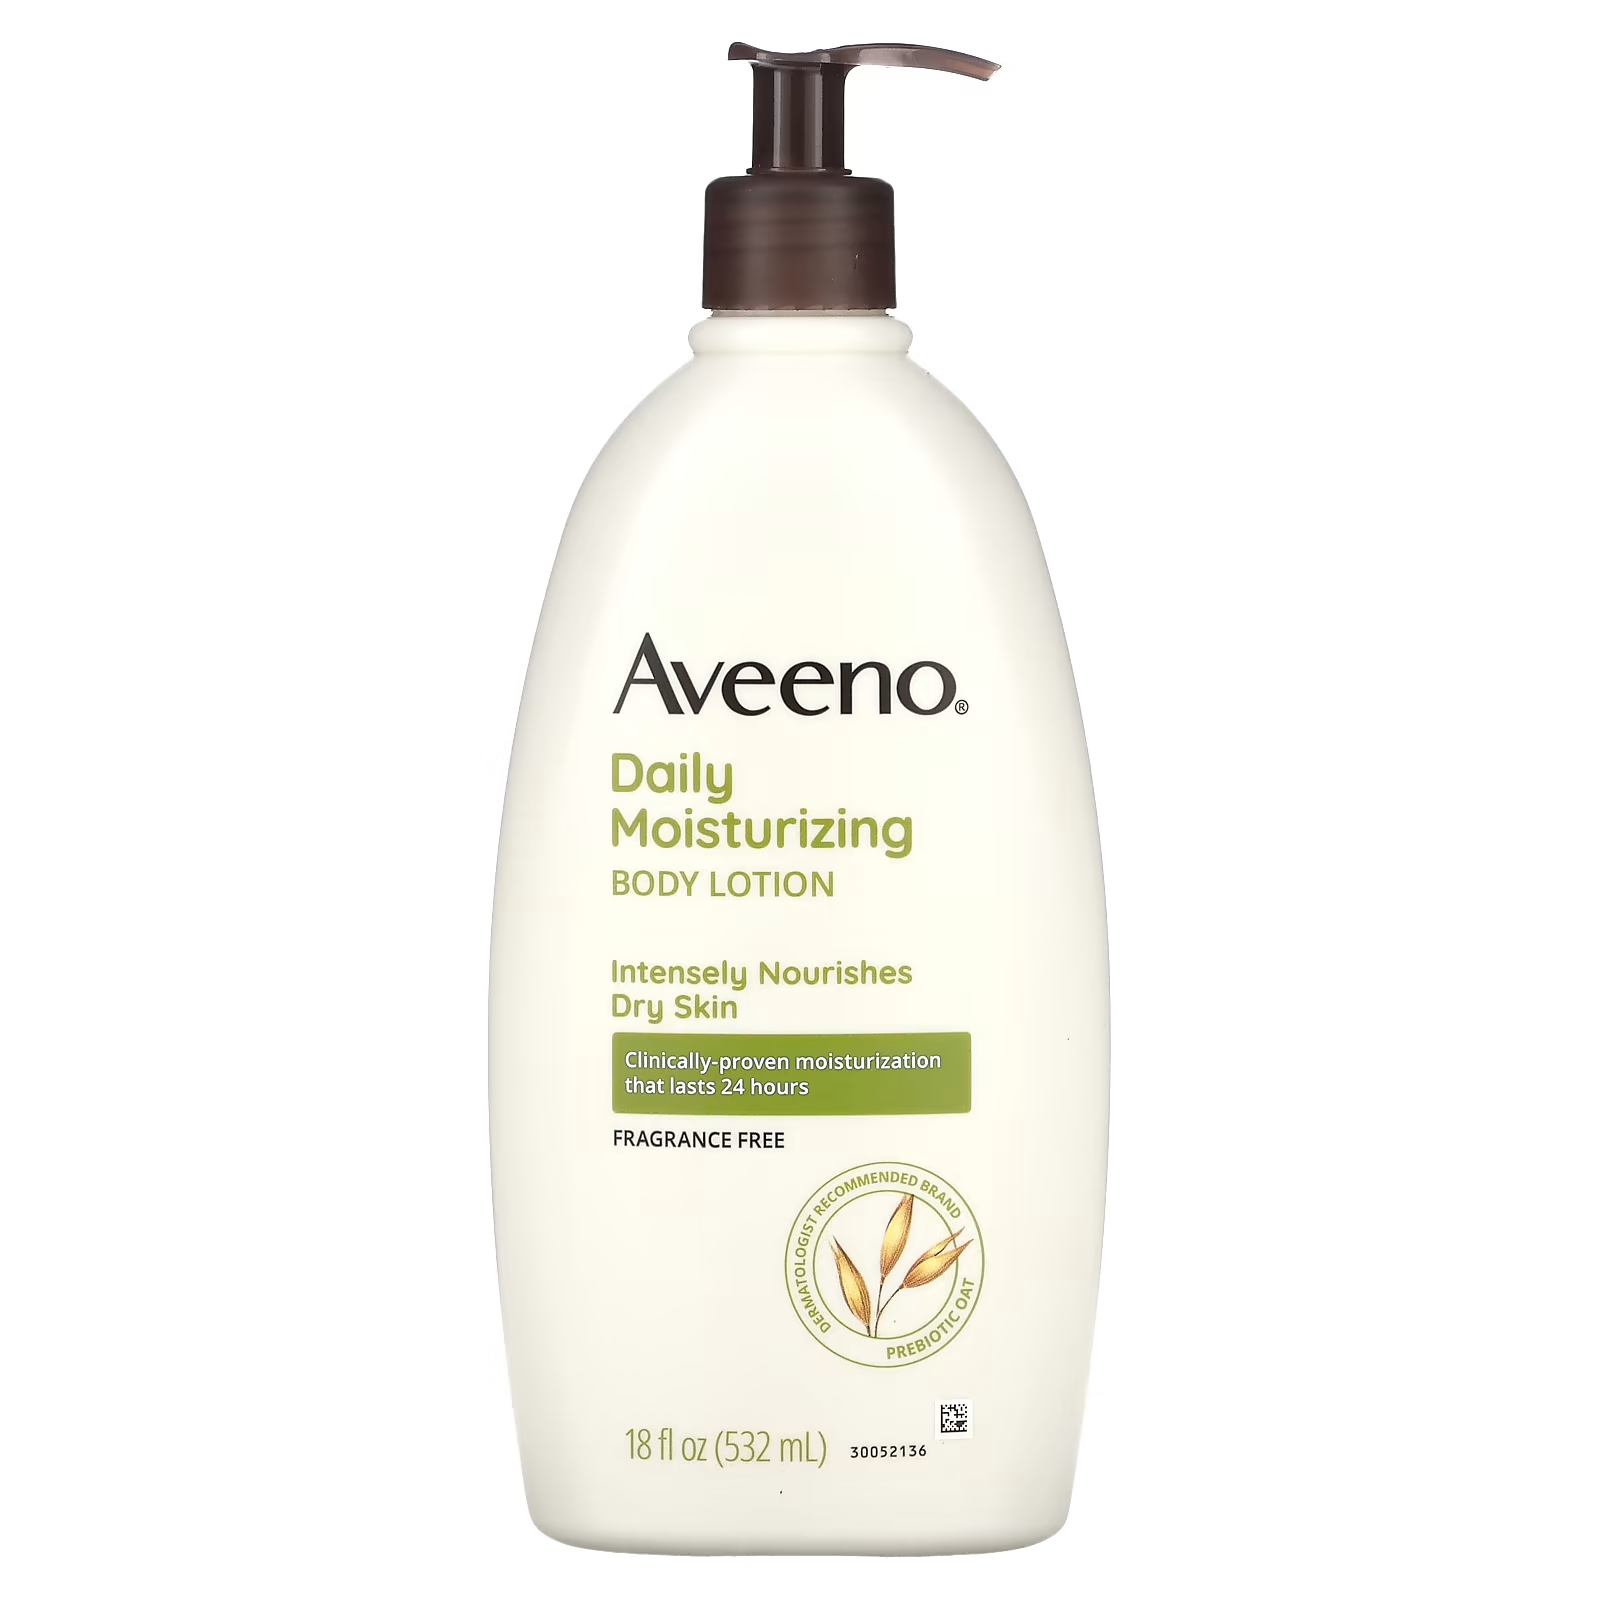 Aveeno Daily Увлажняющий лосьон для тела без запаха, 18 жидких унций (532 мл)